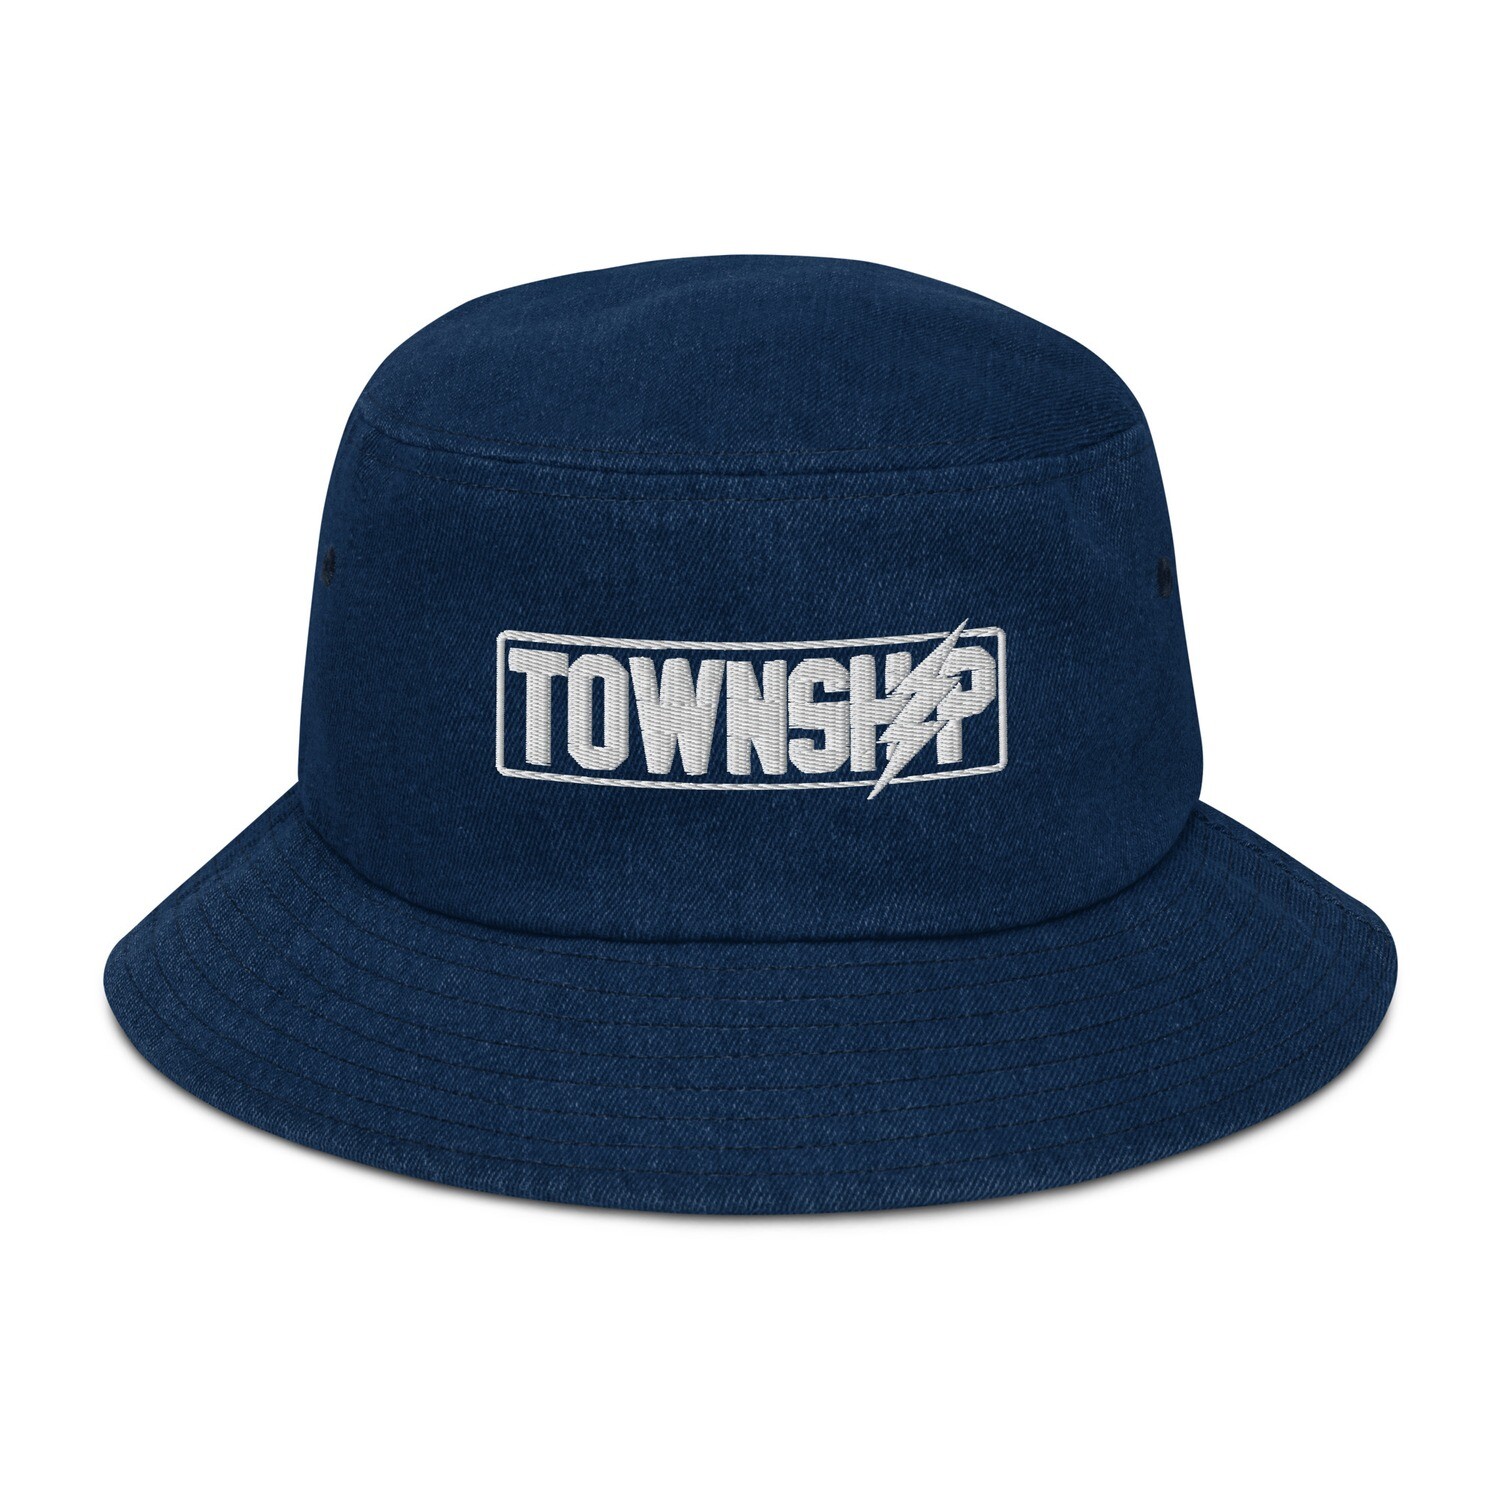 Township Embroidered Denim bucket hat